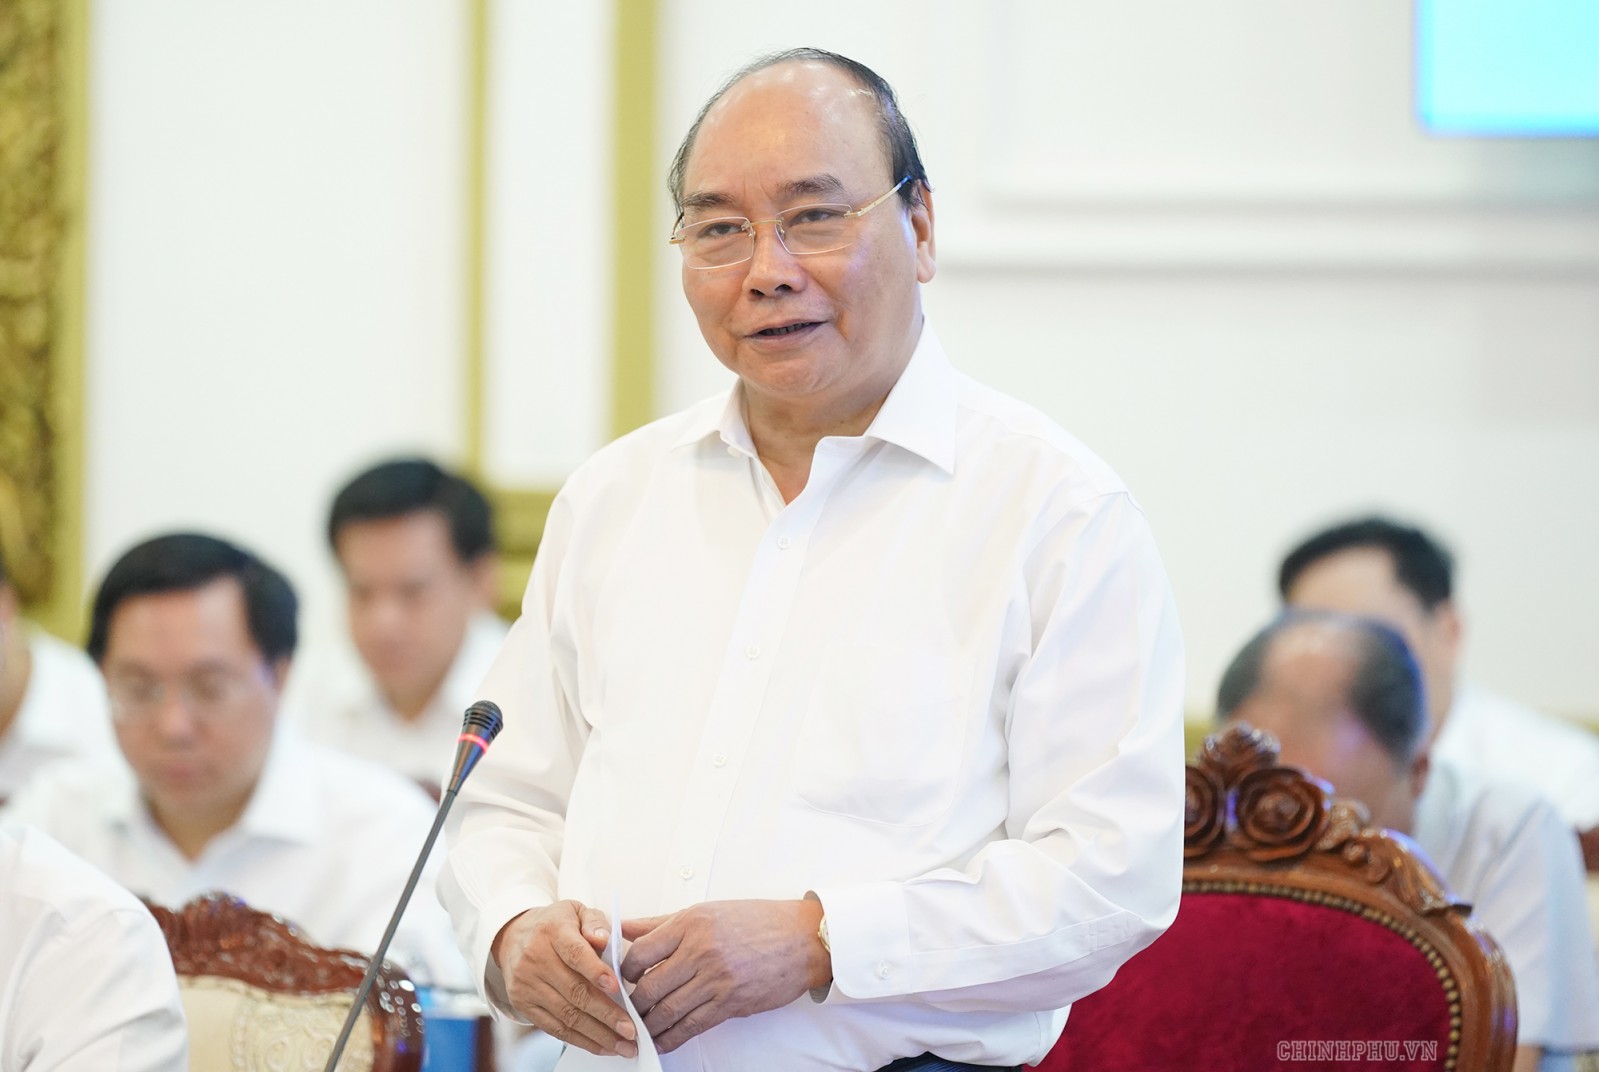 Thủ tướng Nguyễn Xuân Phúc phát biểu tại buổi làm việc. Ảnh: VGP/Quang Hiếu